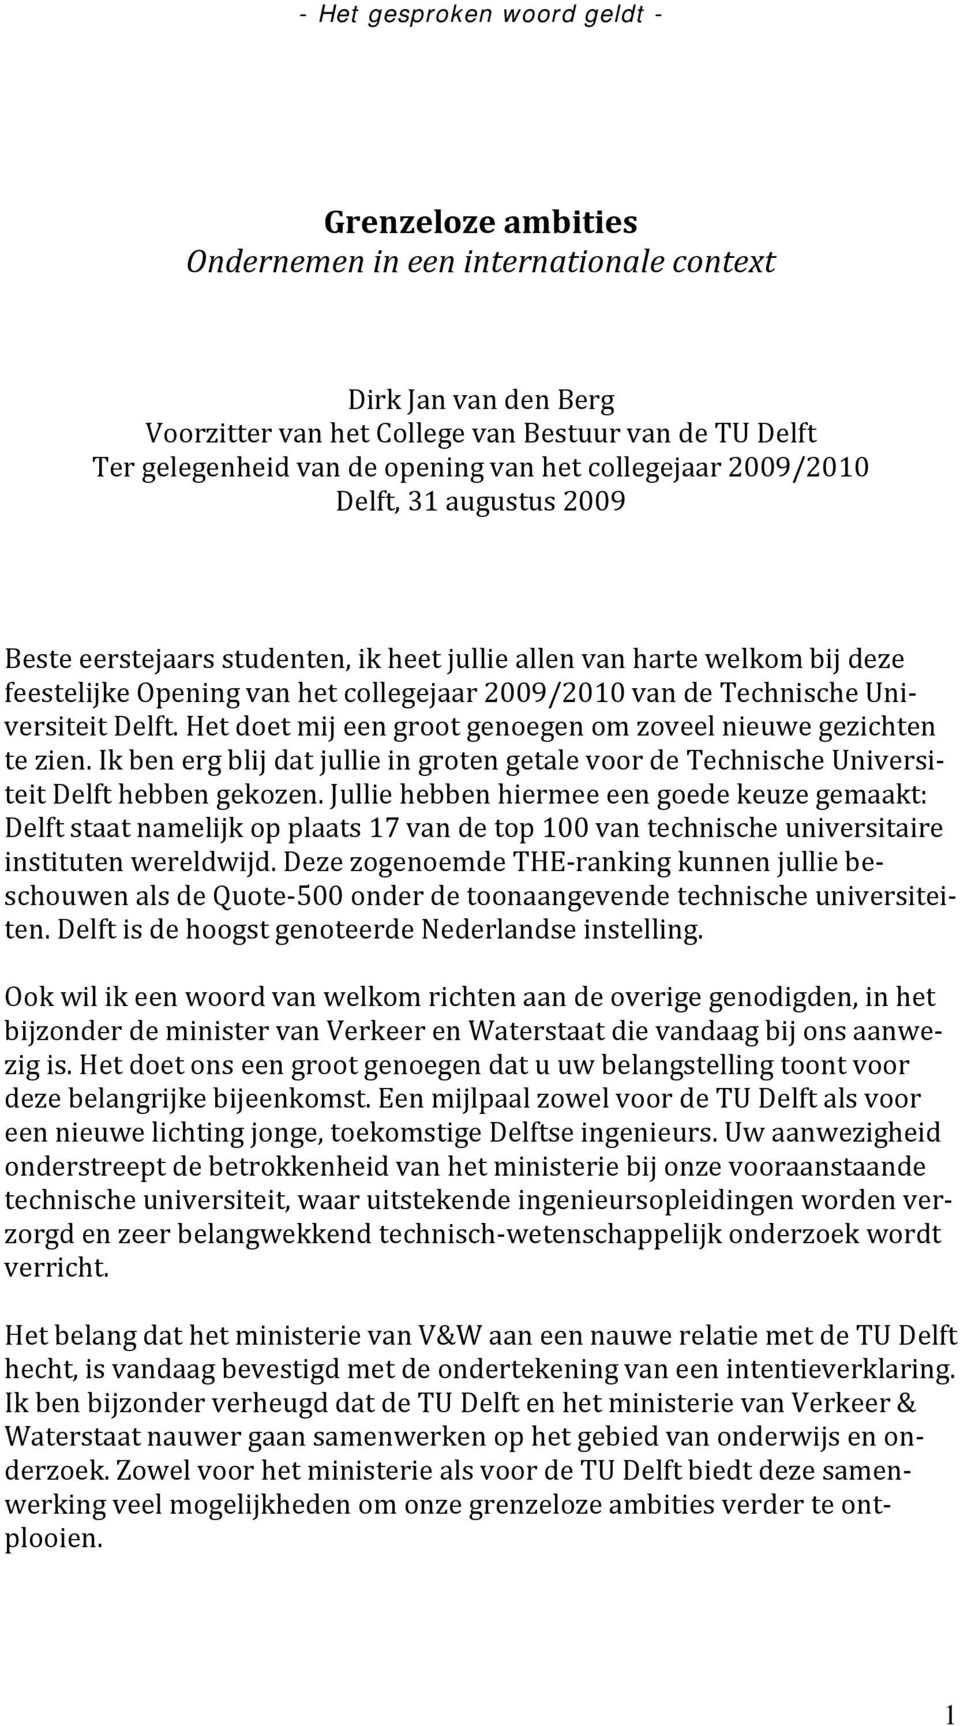 Het doet mij een groot genoegen om zoveel nieuwe gezichten te zien. Ik ben erg blij dat jullie in groten getale voor de Technische Universiteit Delft hebben gekozen.